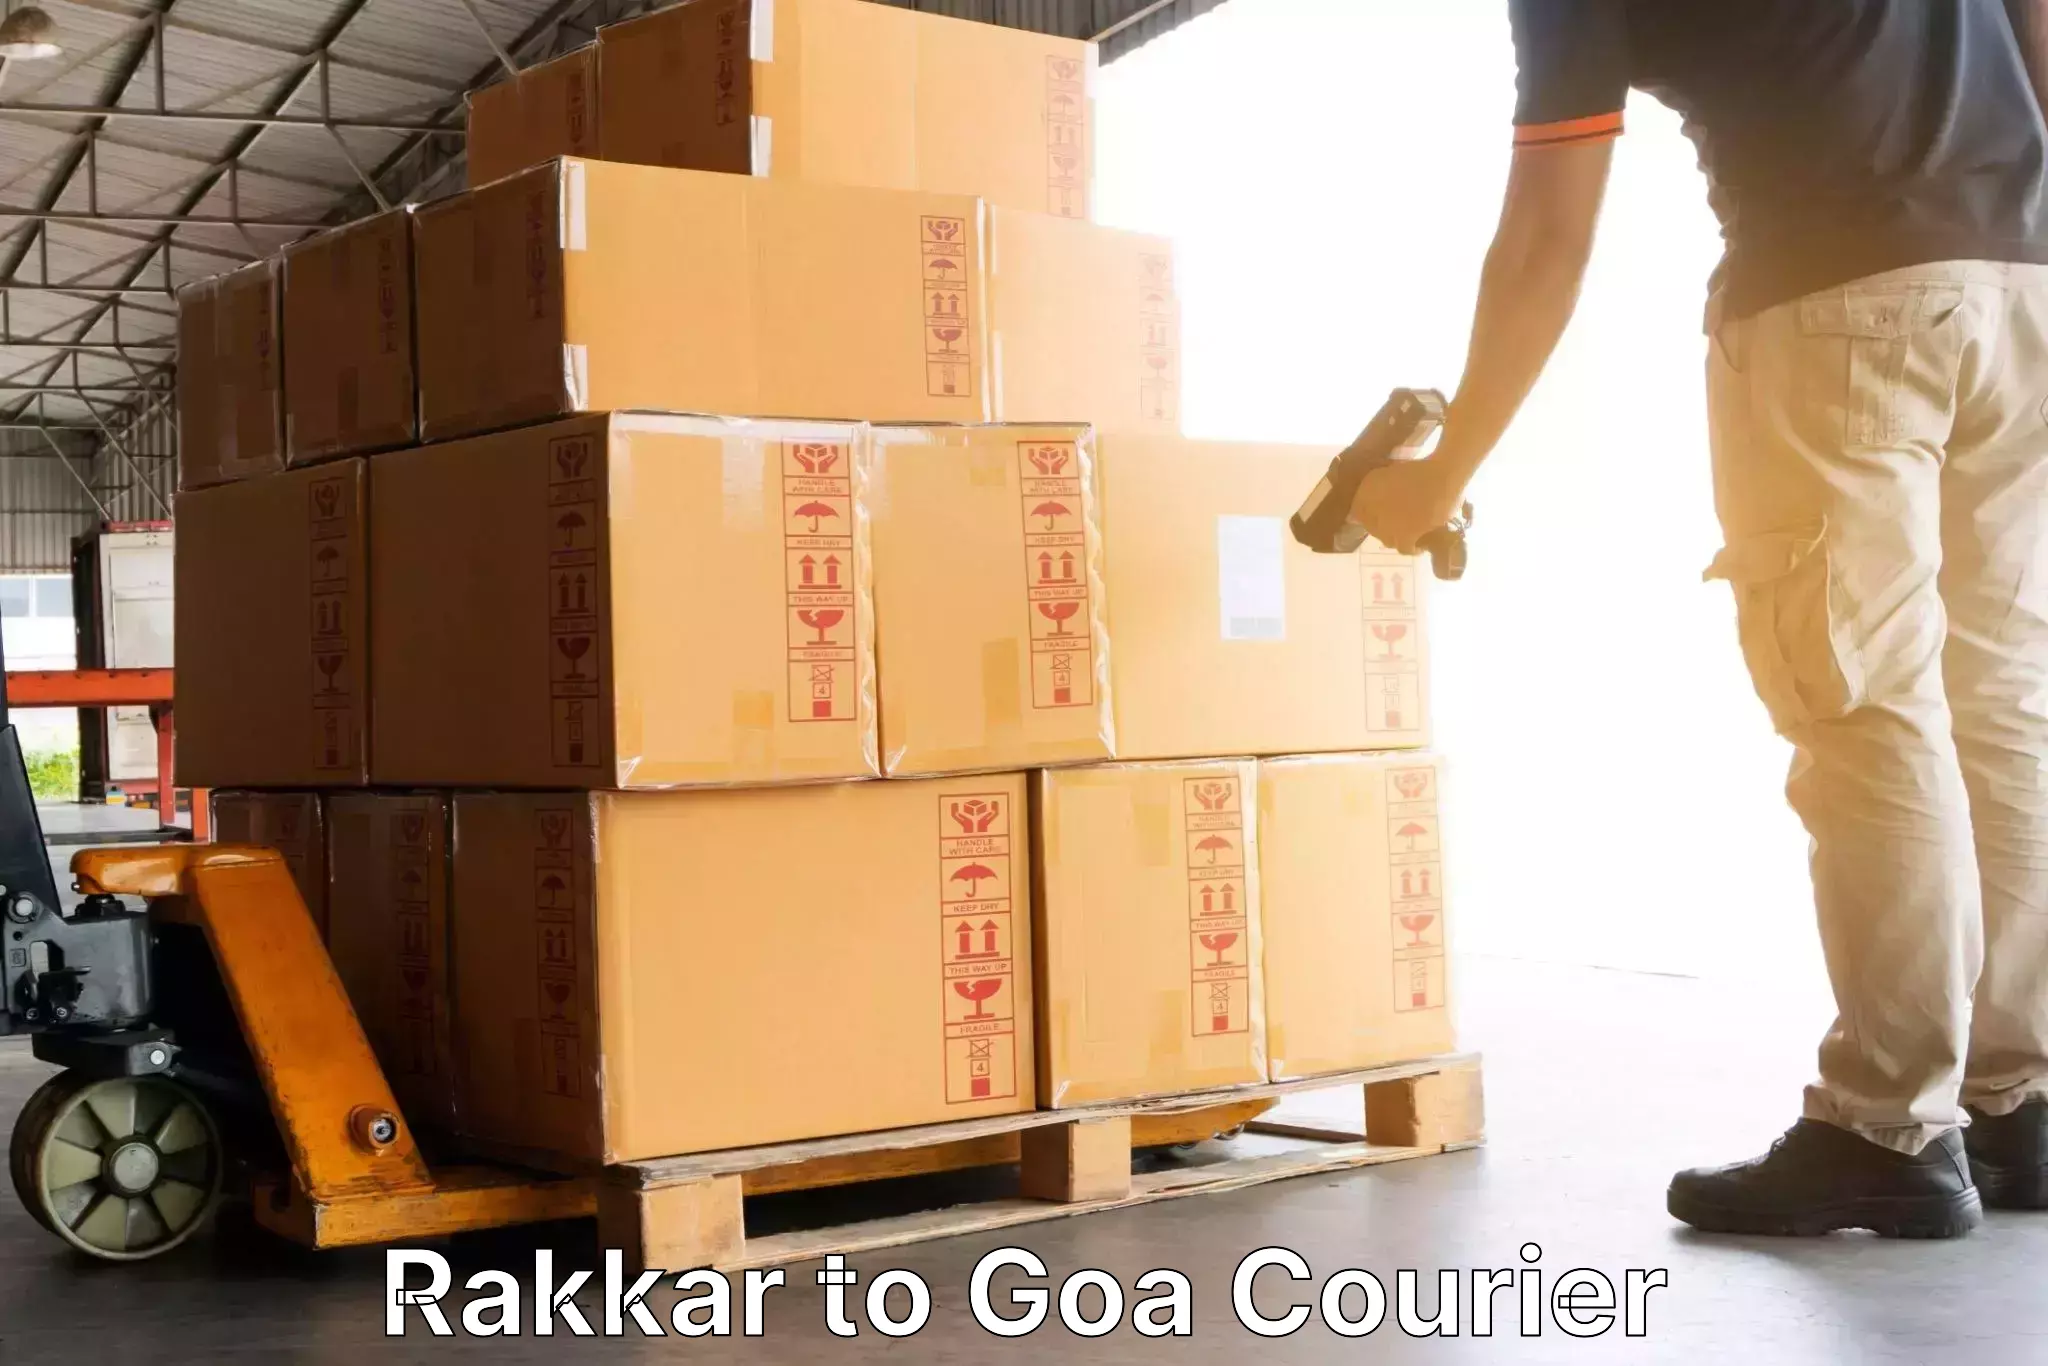 Supply chain efficiency Rakkar to Panjim